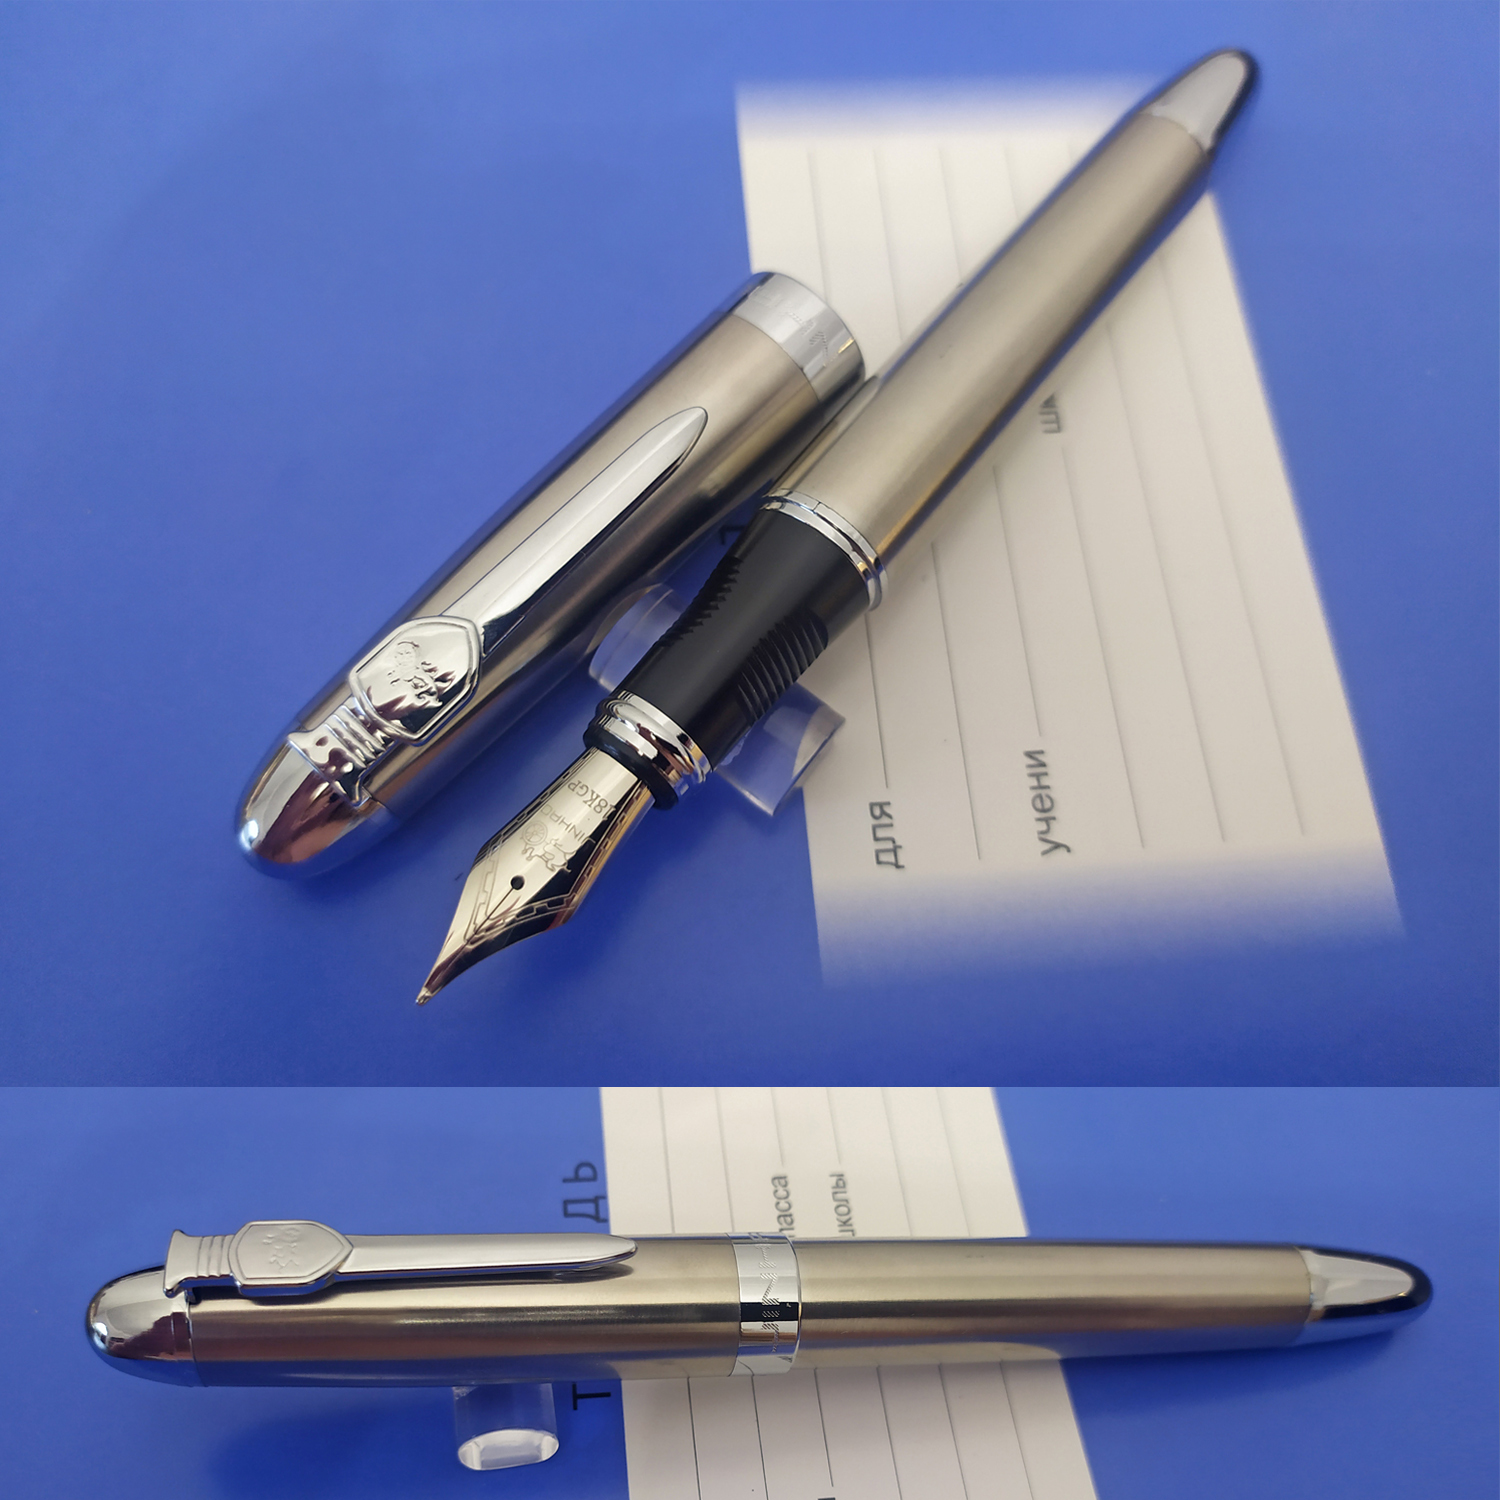 Перьевая ручка Jinhao 450А, Китай. Перо М (0.75 мм), корпус металл. Цвет серебристо-бронзовый.